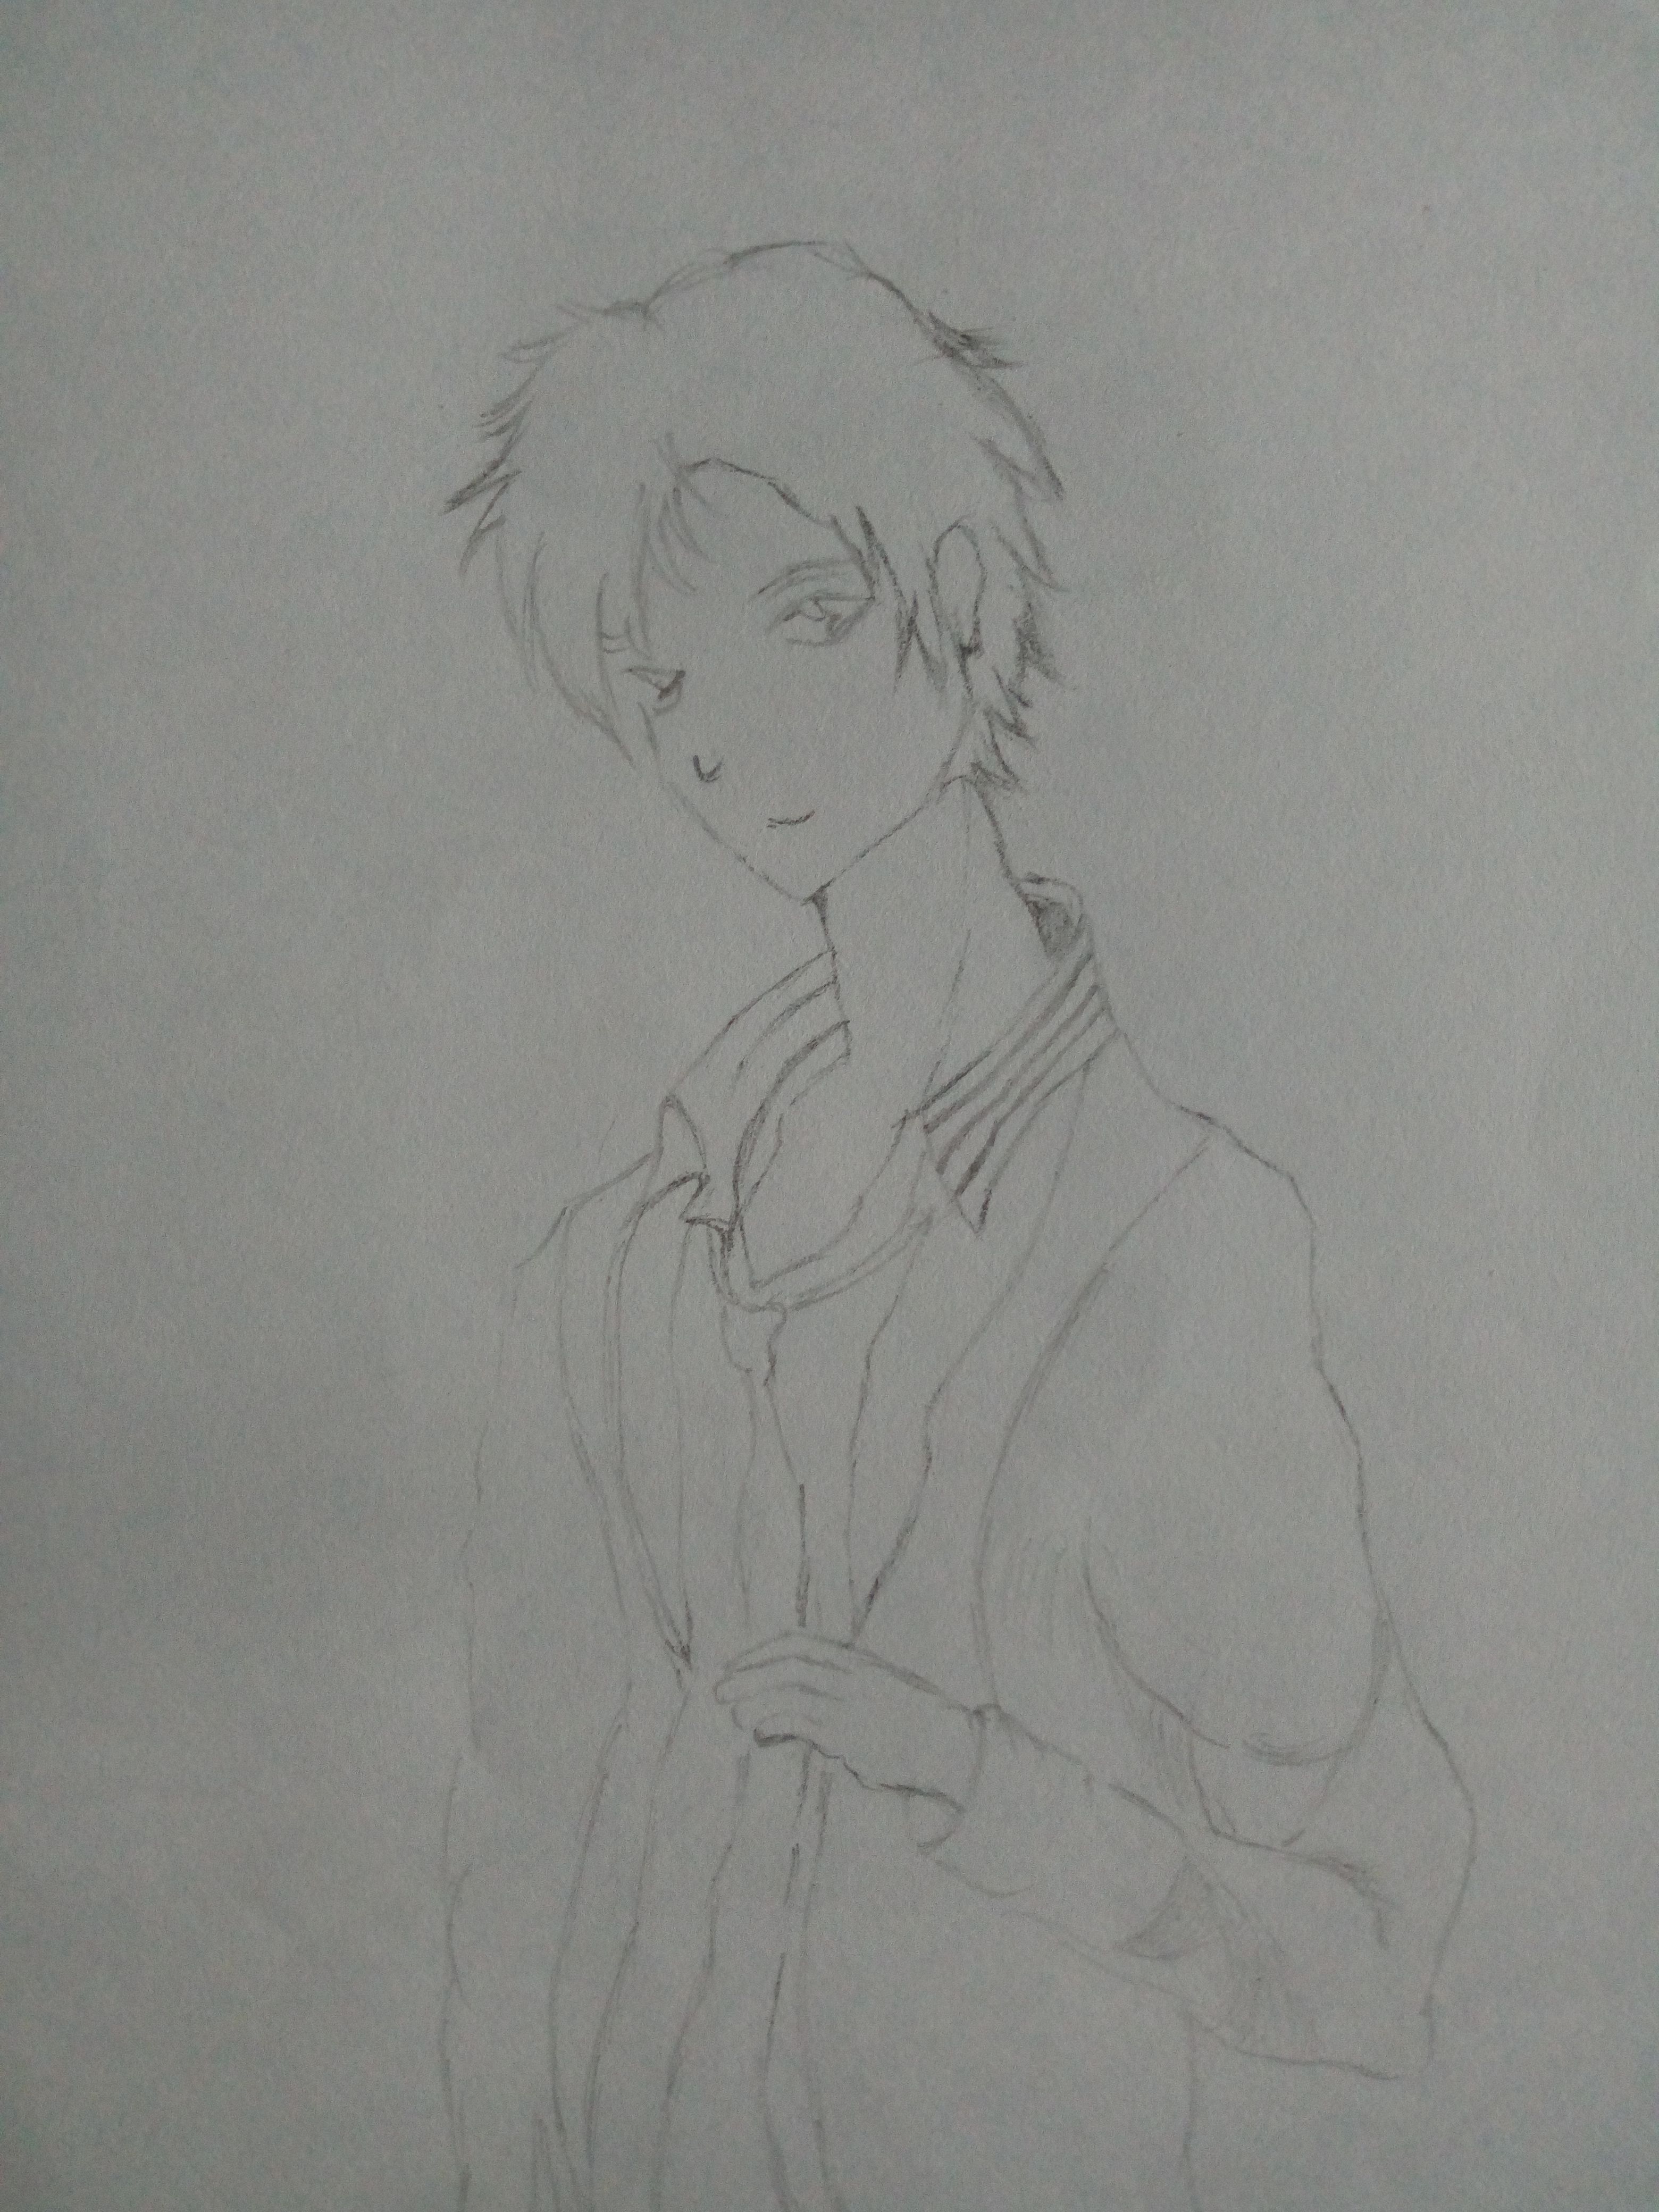 Anime Boy Drawing Images - Free Download on Freepik